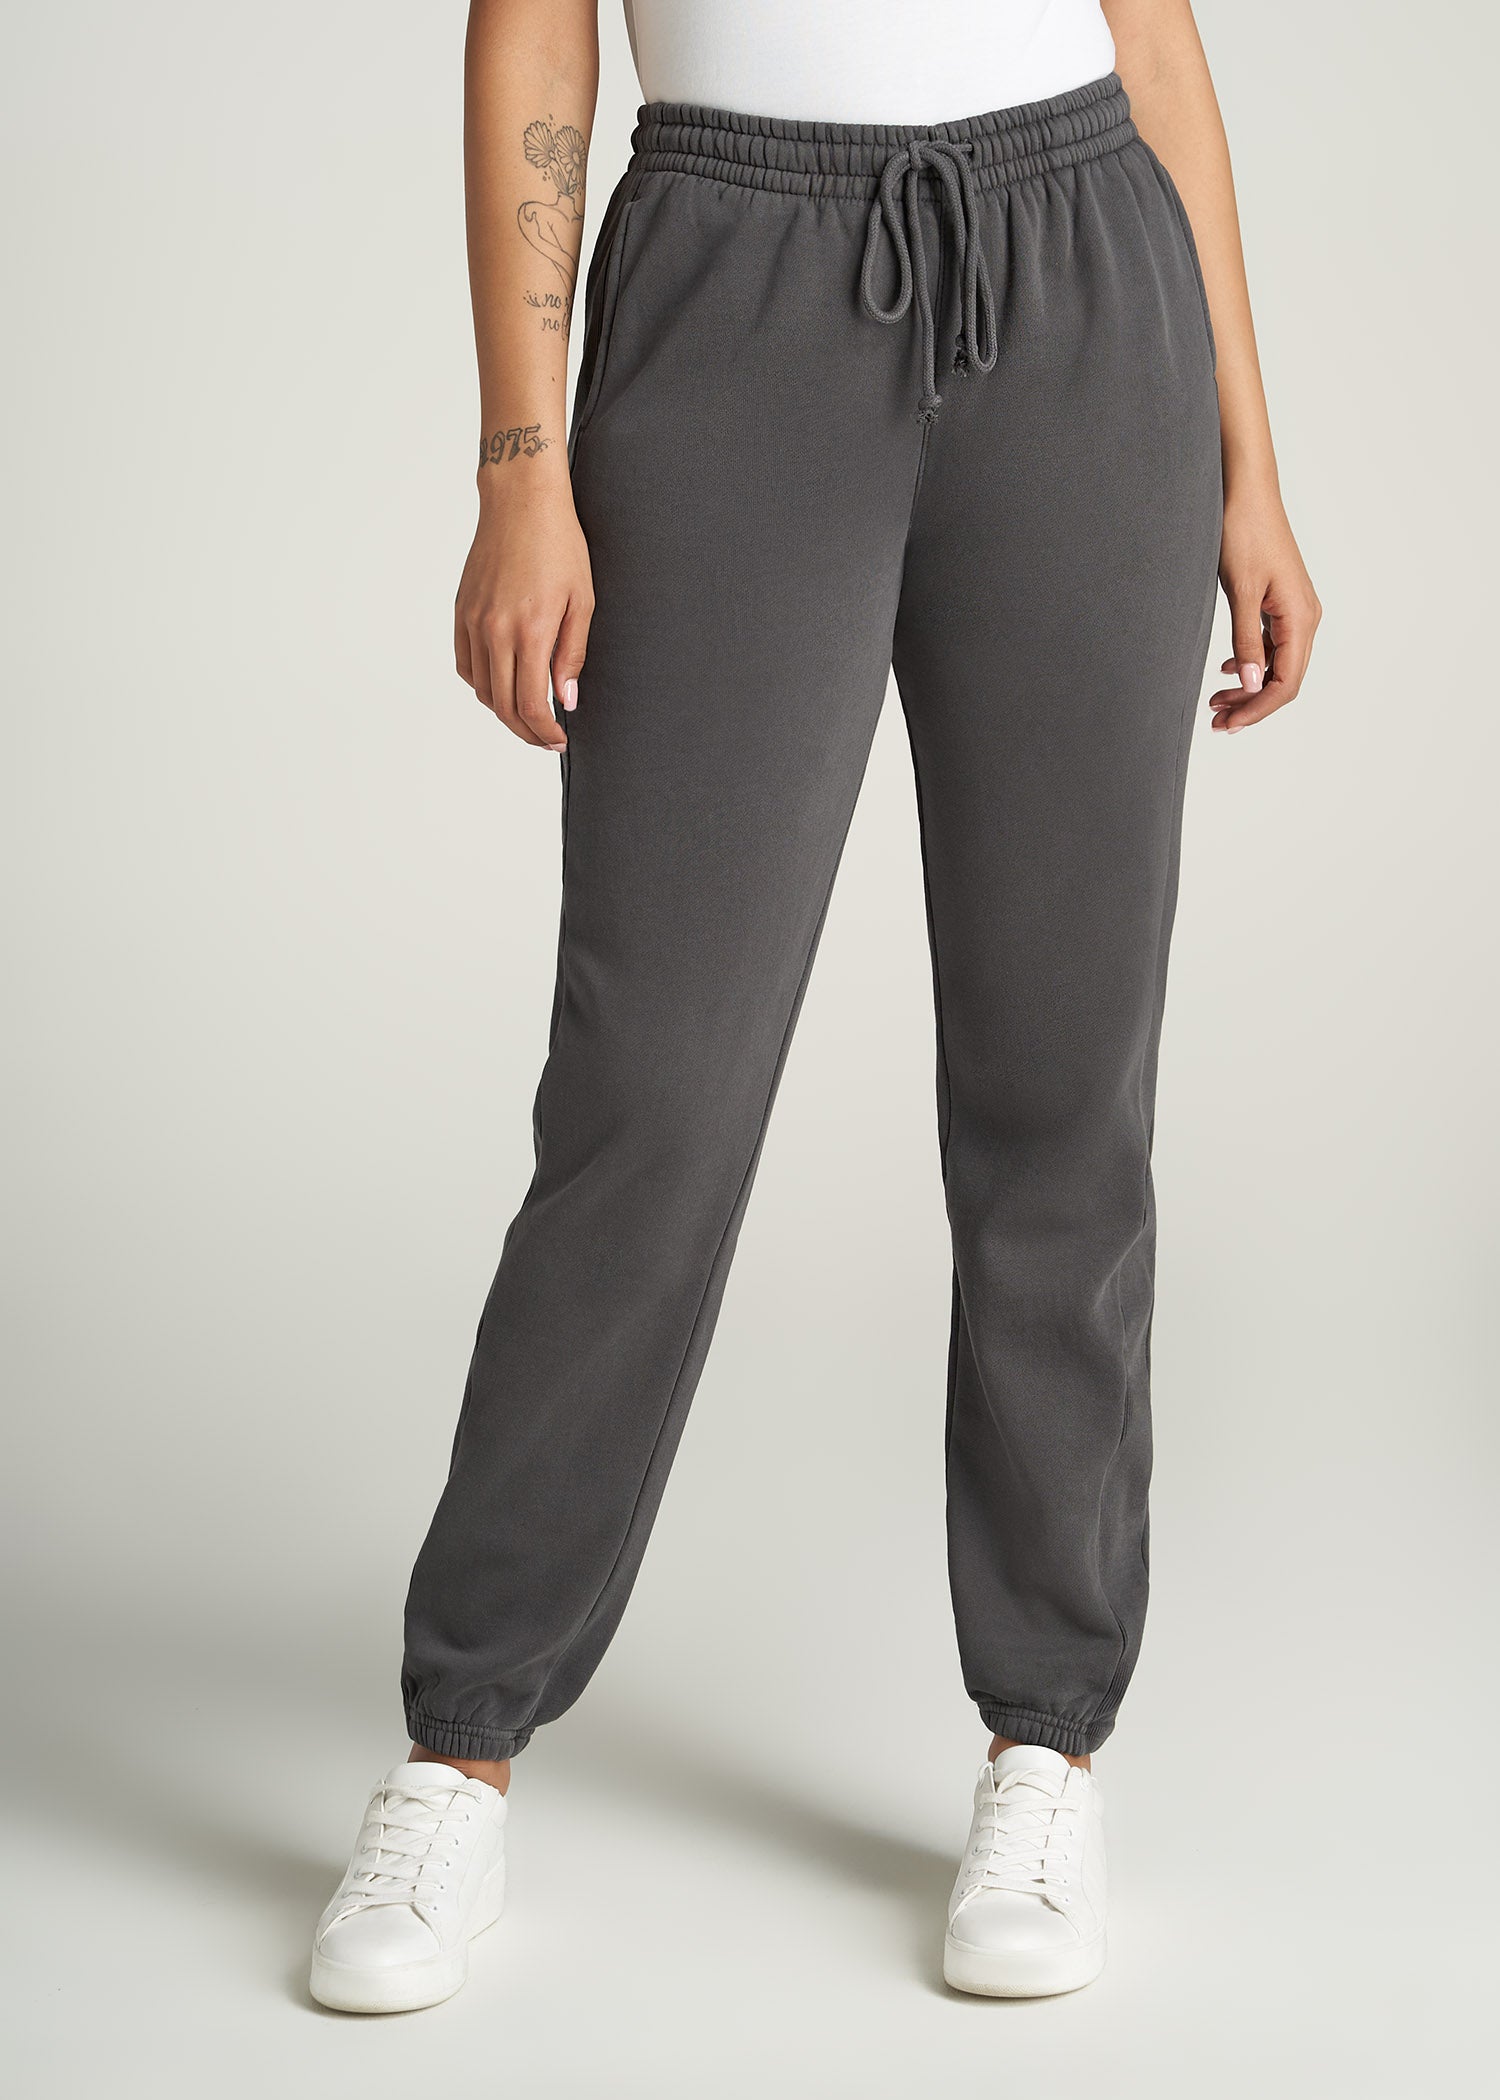 Fleece Regular Sweatpants for Tall Women | American Tall